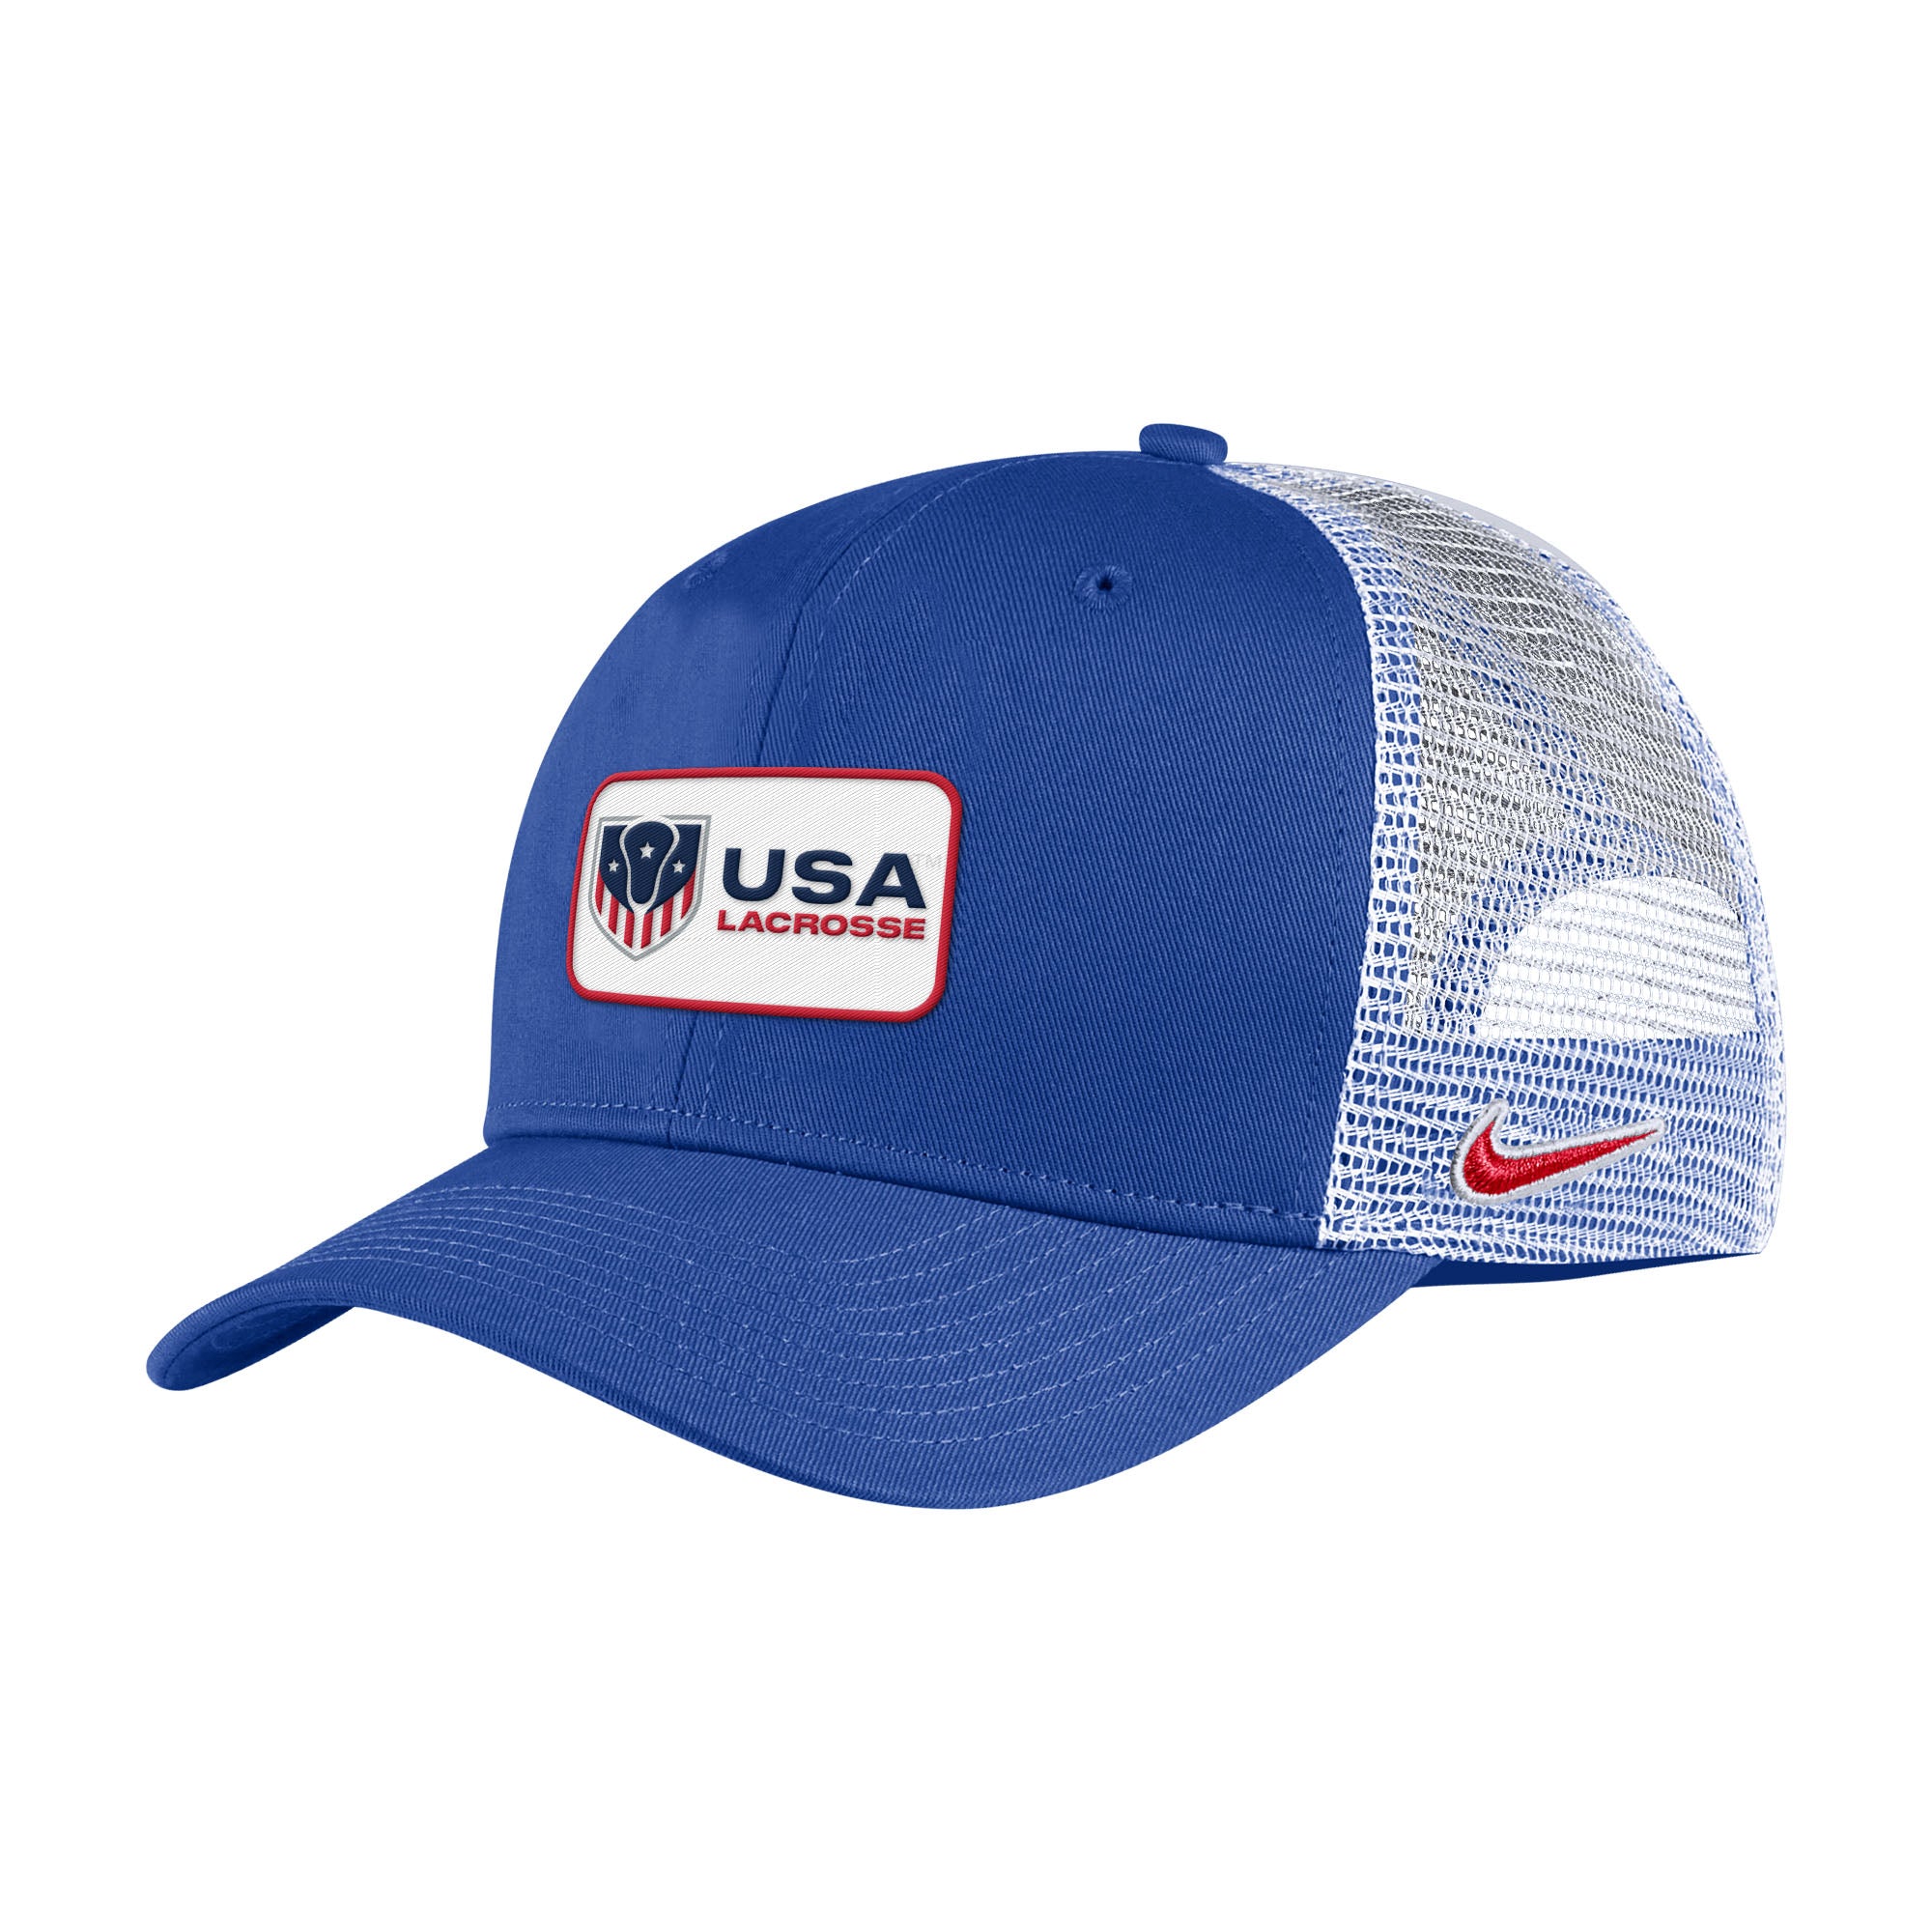 Youth USA Lacrosse Nike Trucker Cap